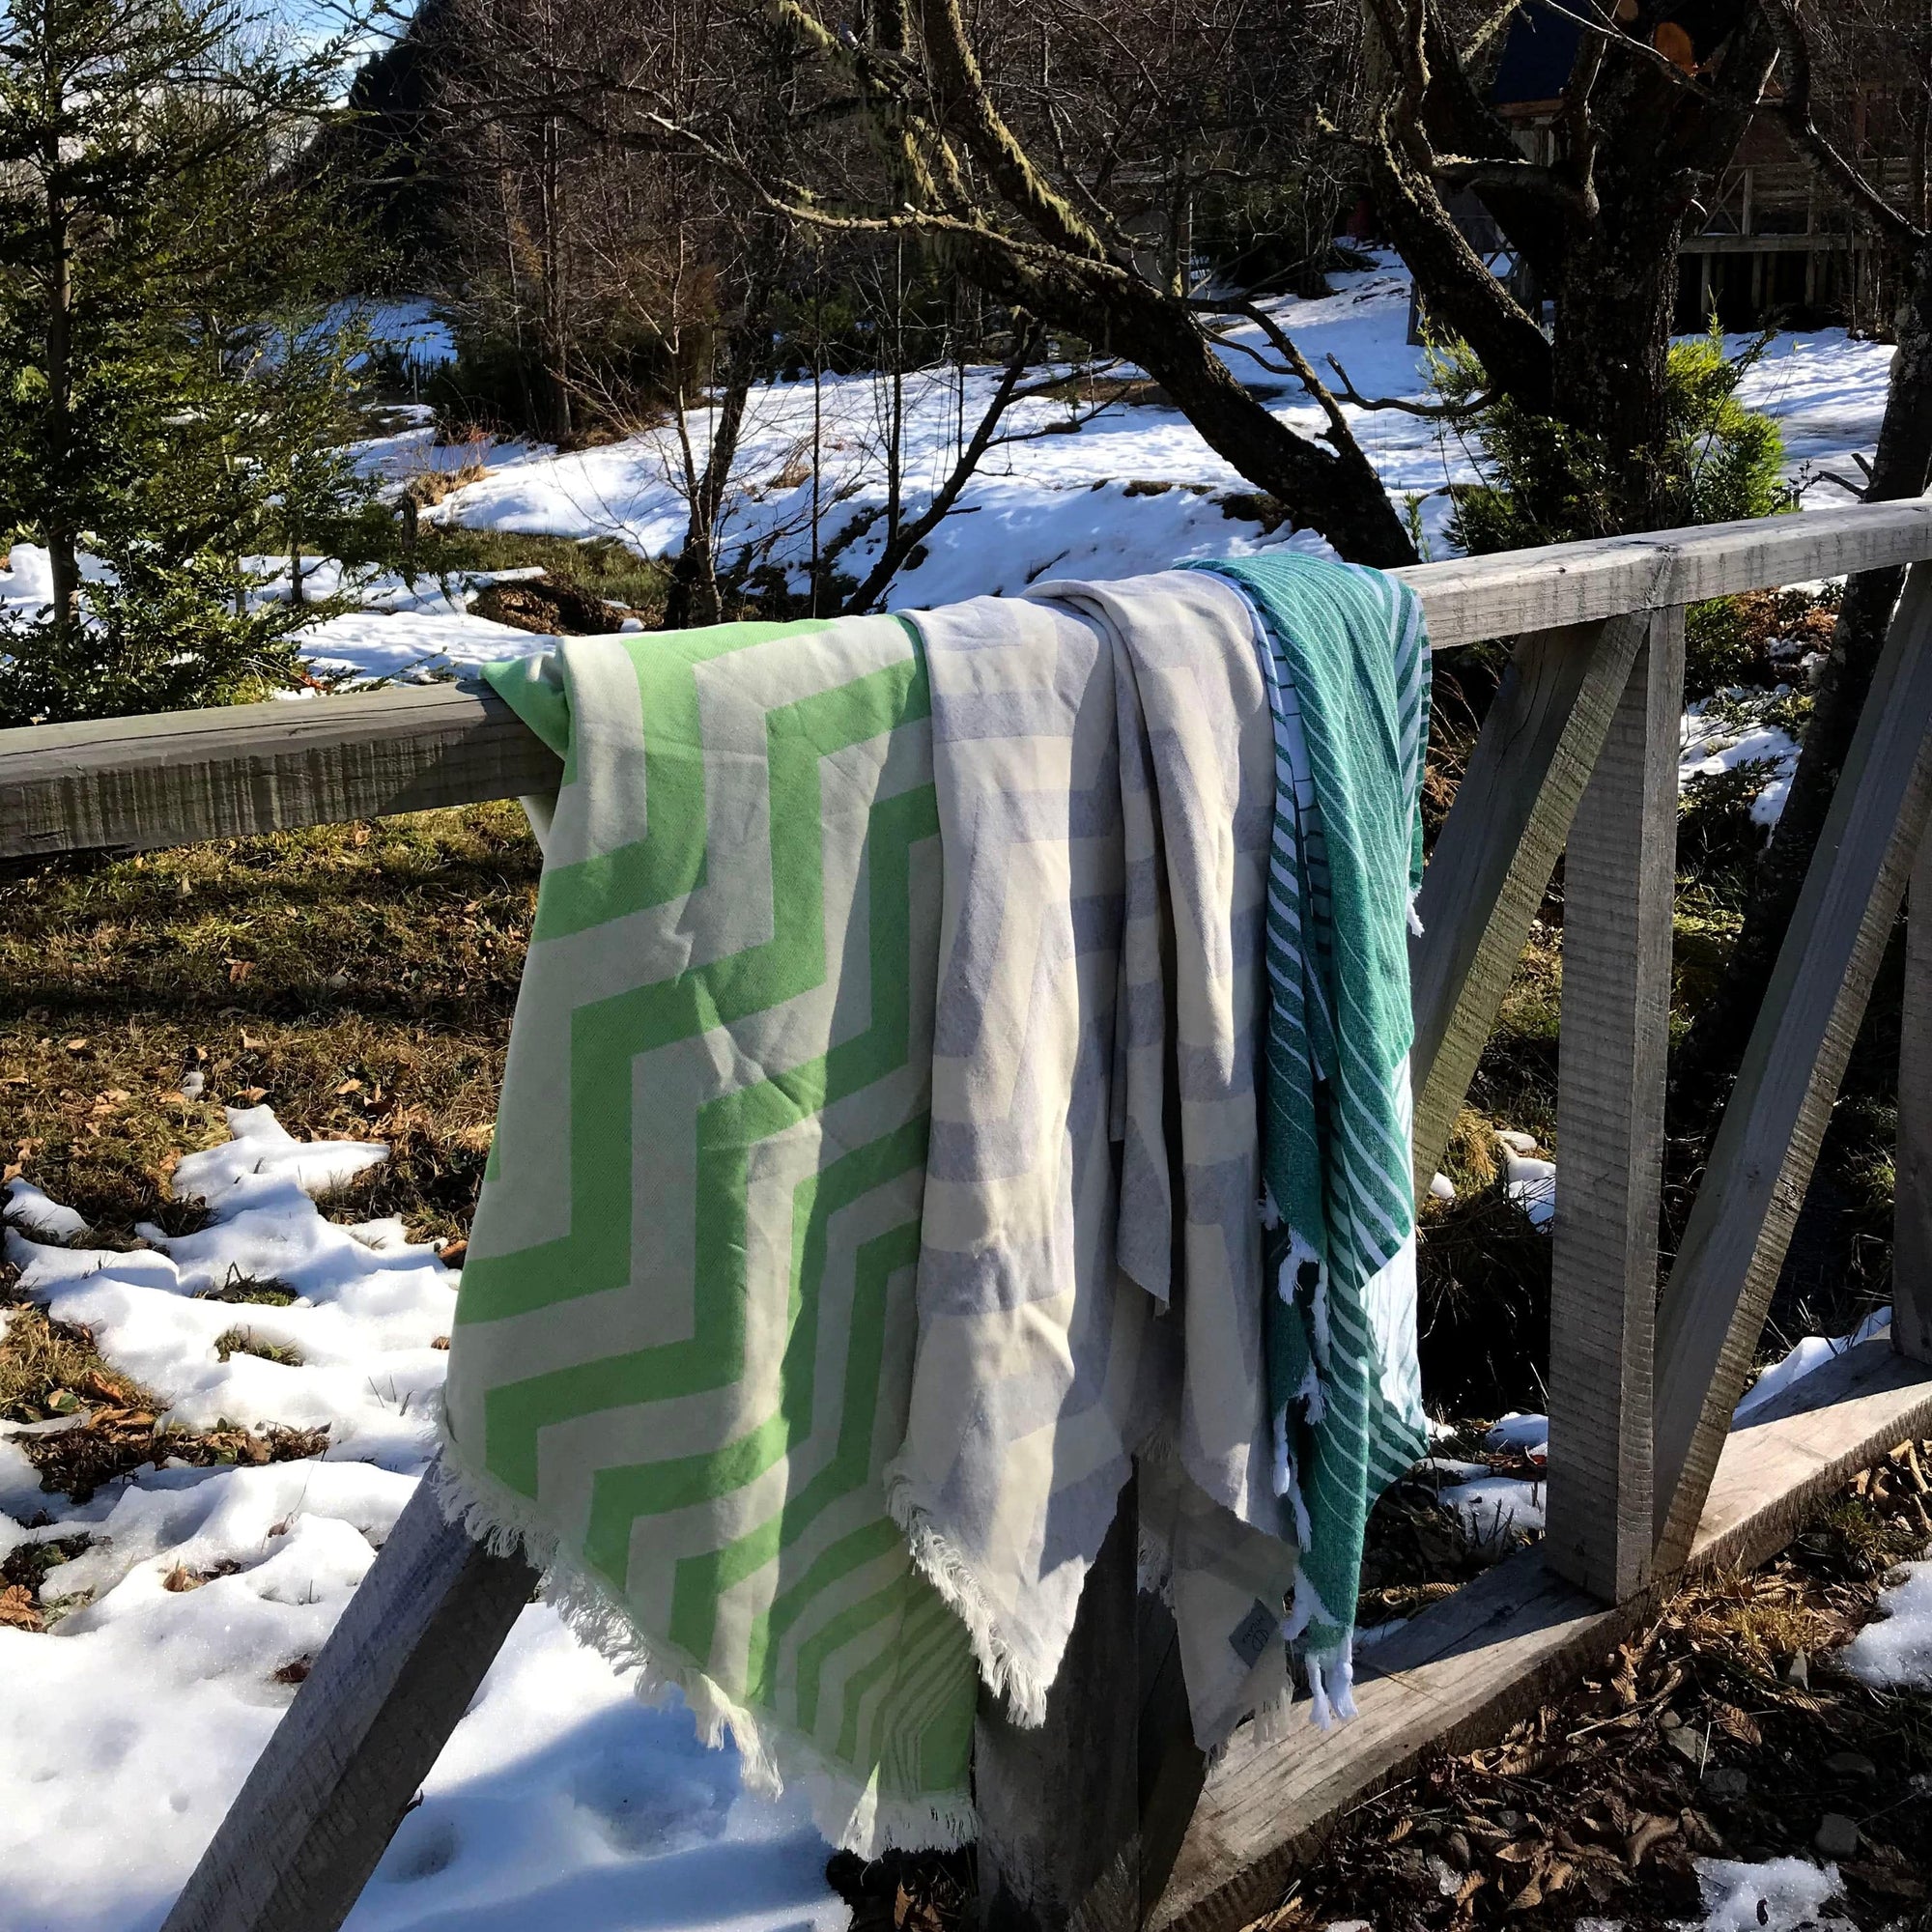 Mersin Chevron Towel / Blanket  - Green